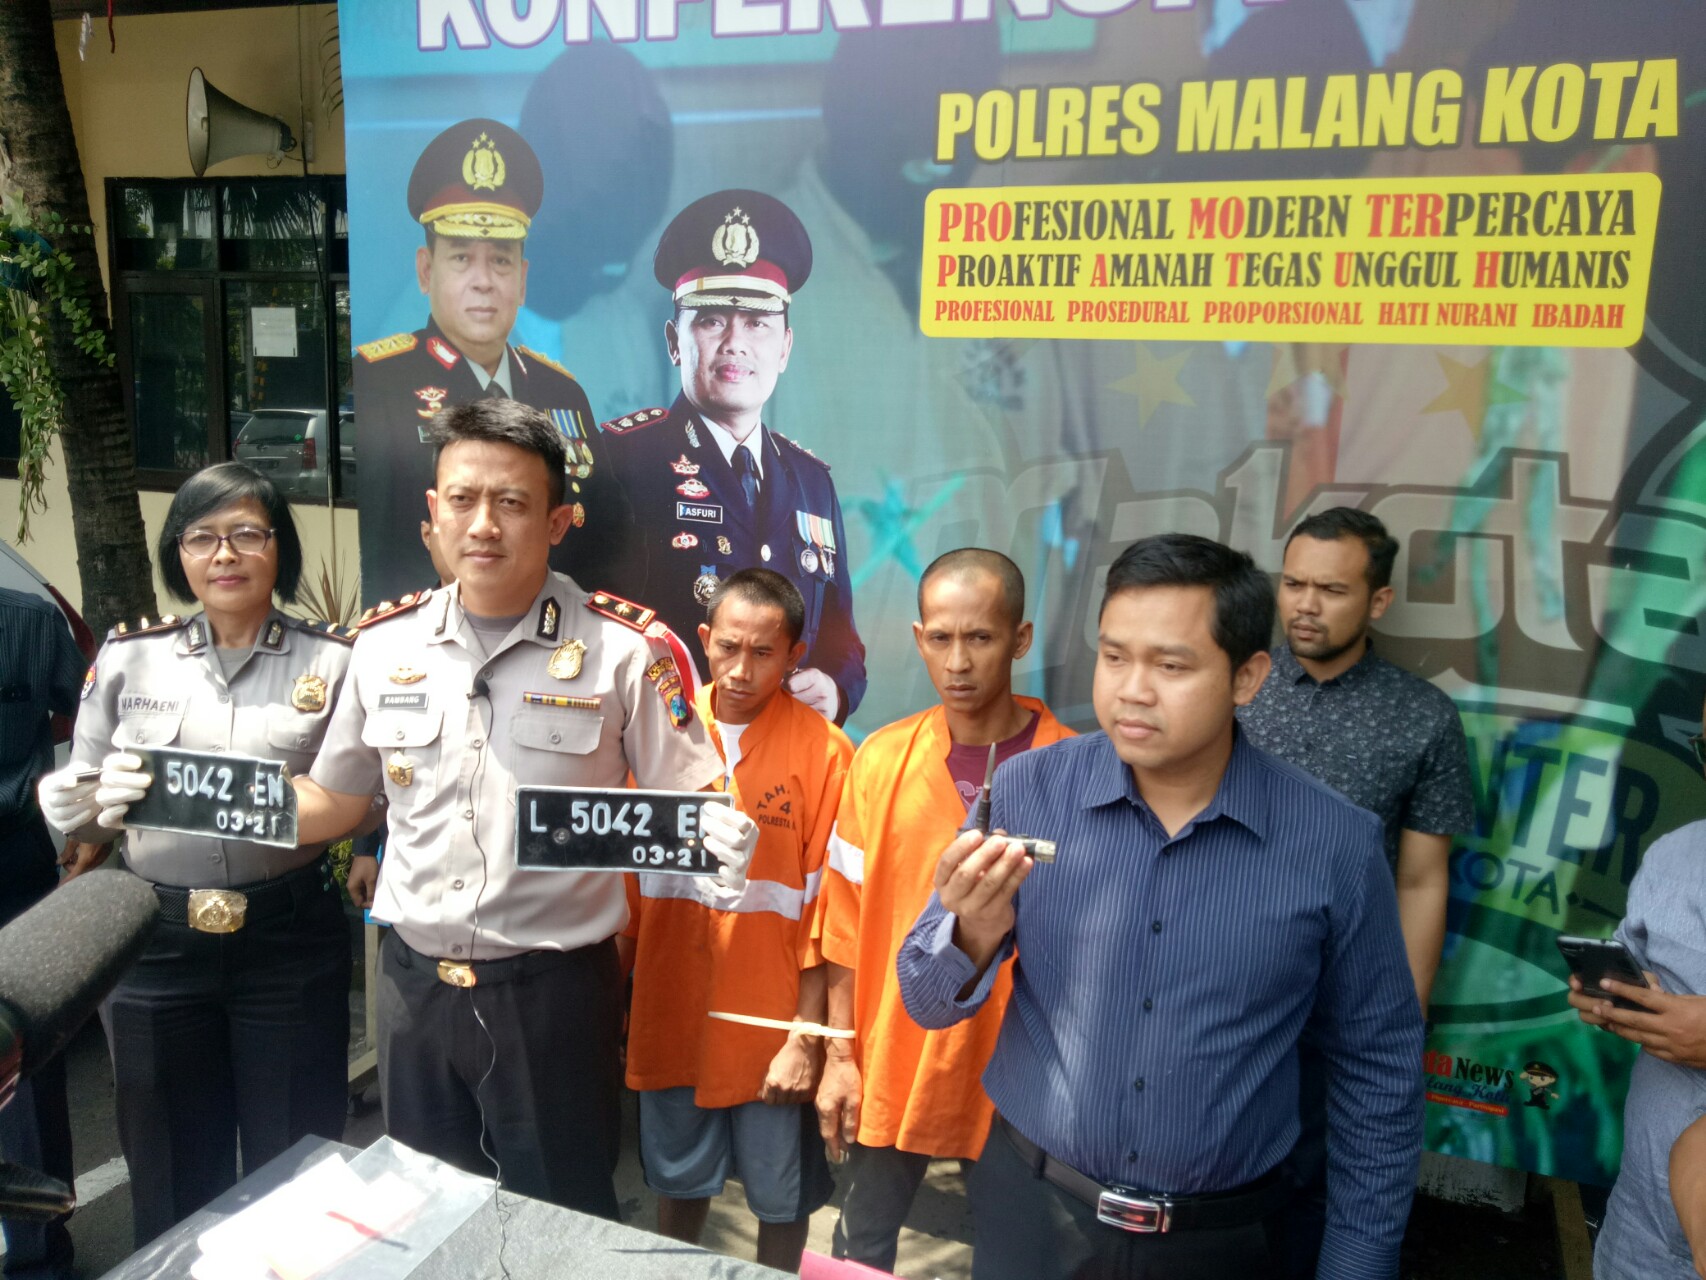 Gelar perkara kasus pencurian motor di Polres Malang Kota.